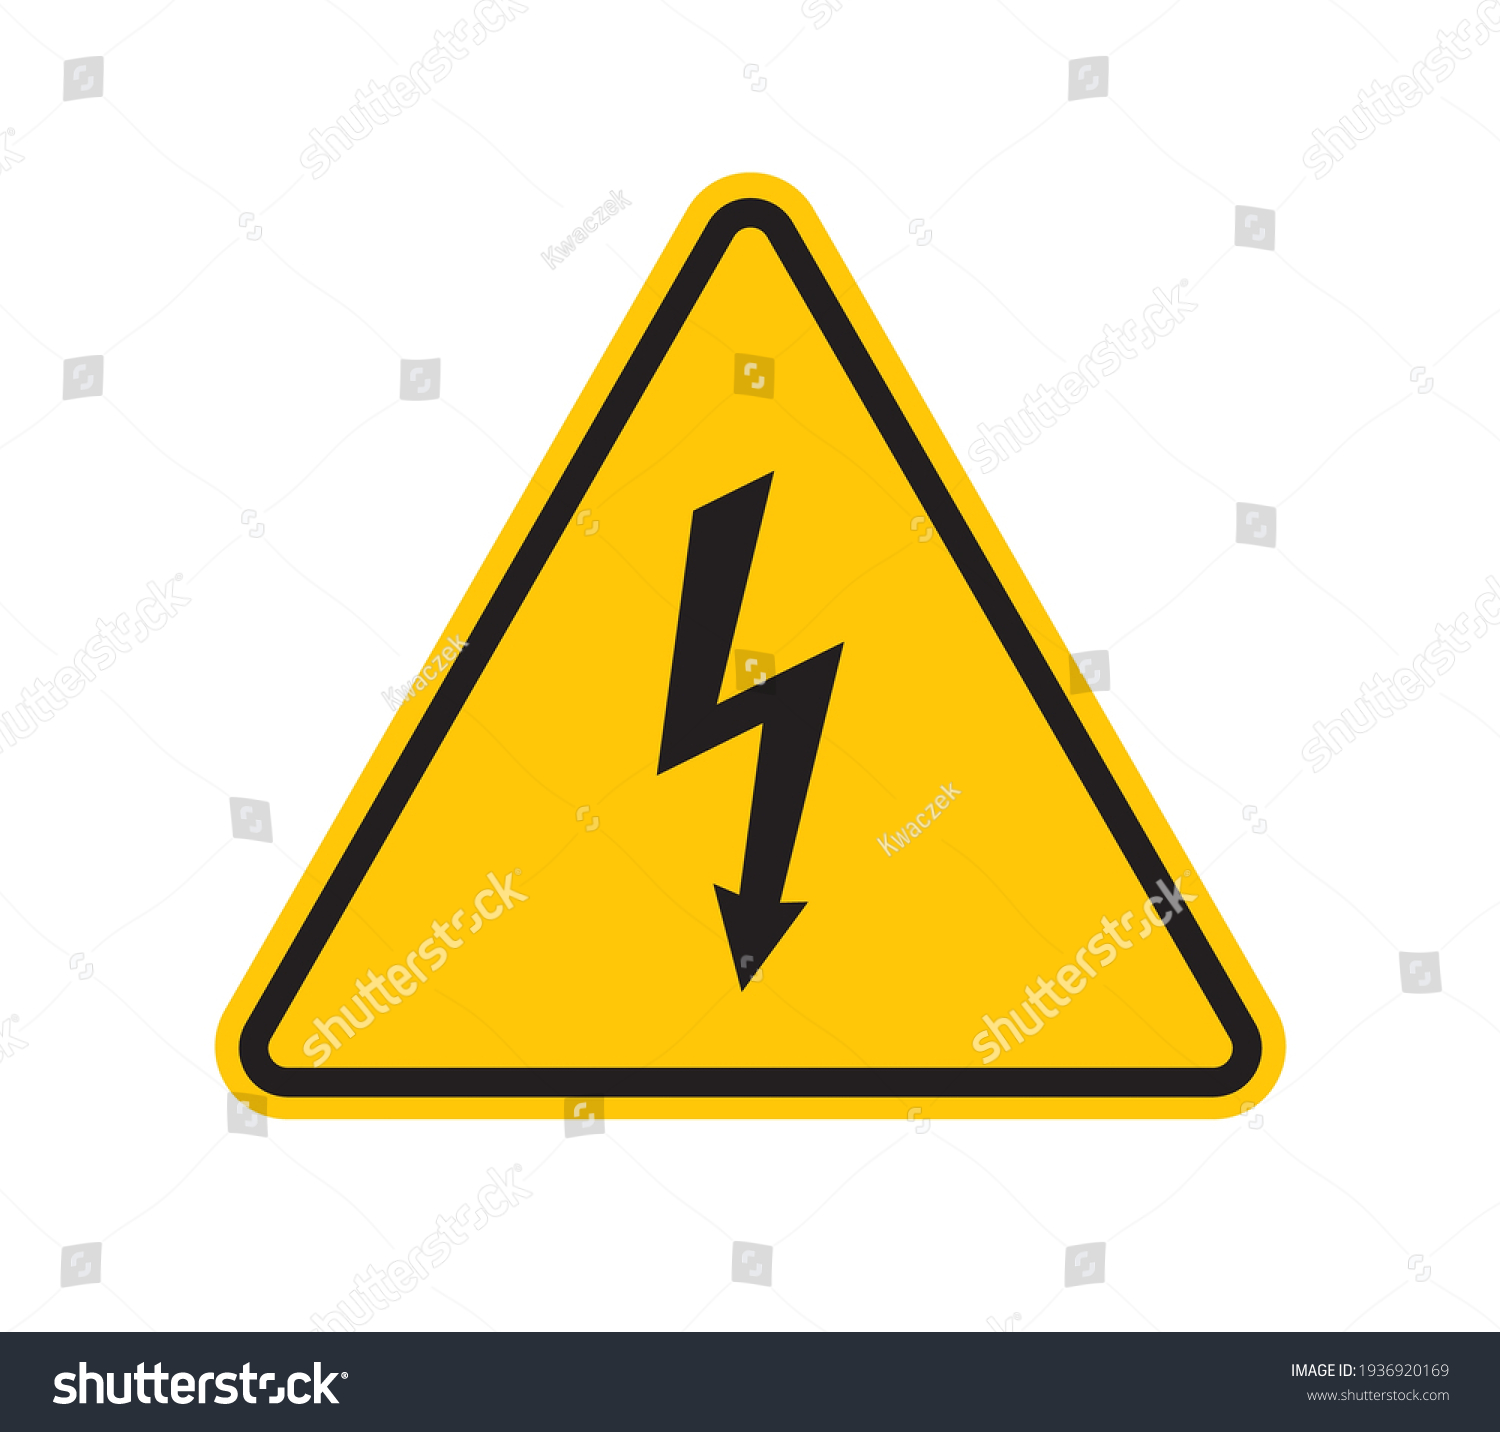 Power danger Images, Stock Photos & Vectors | Shutterstock